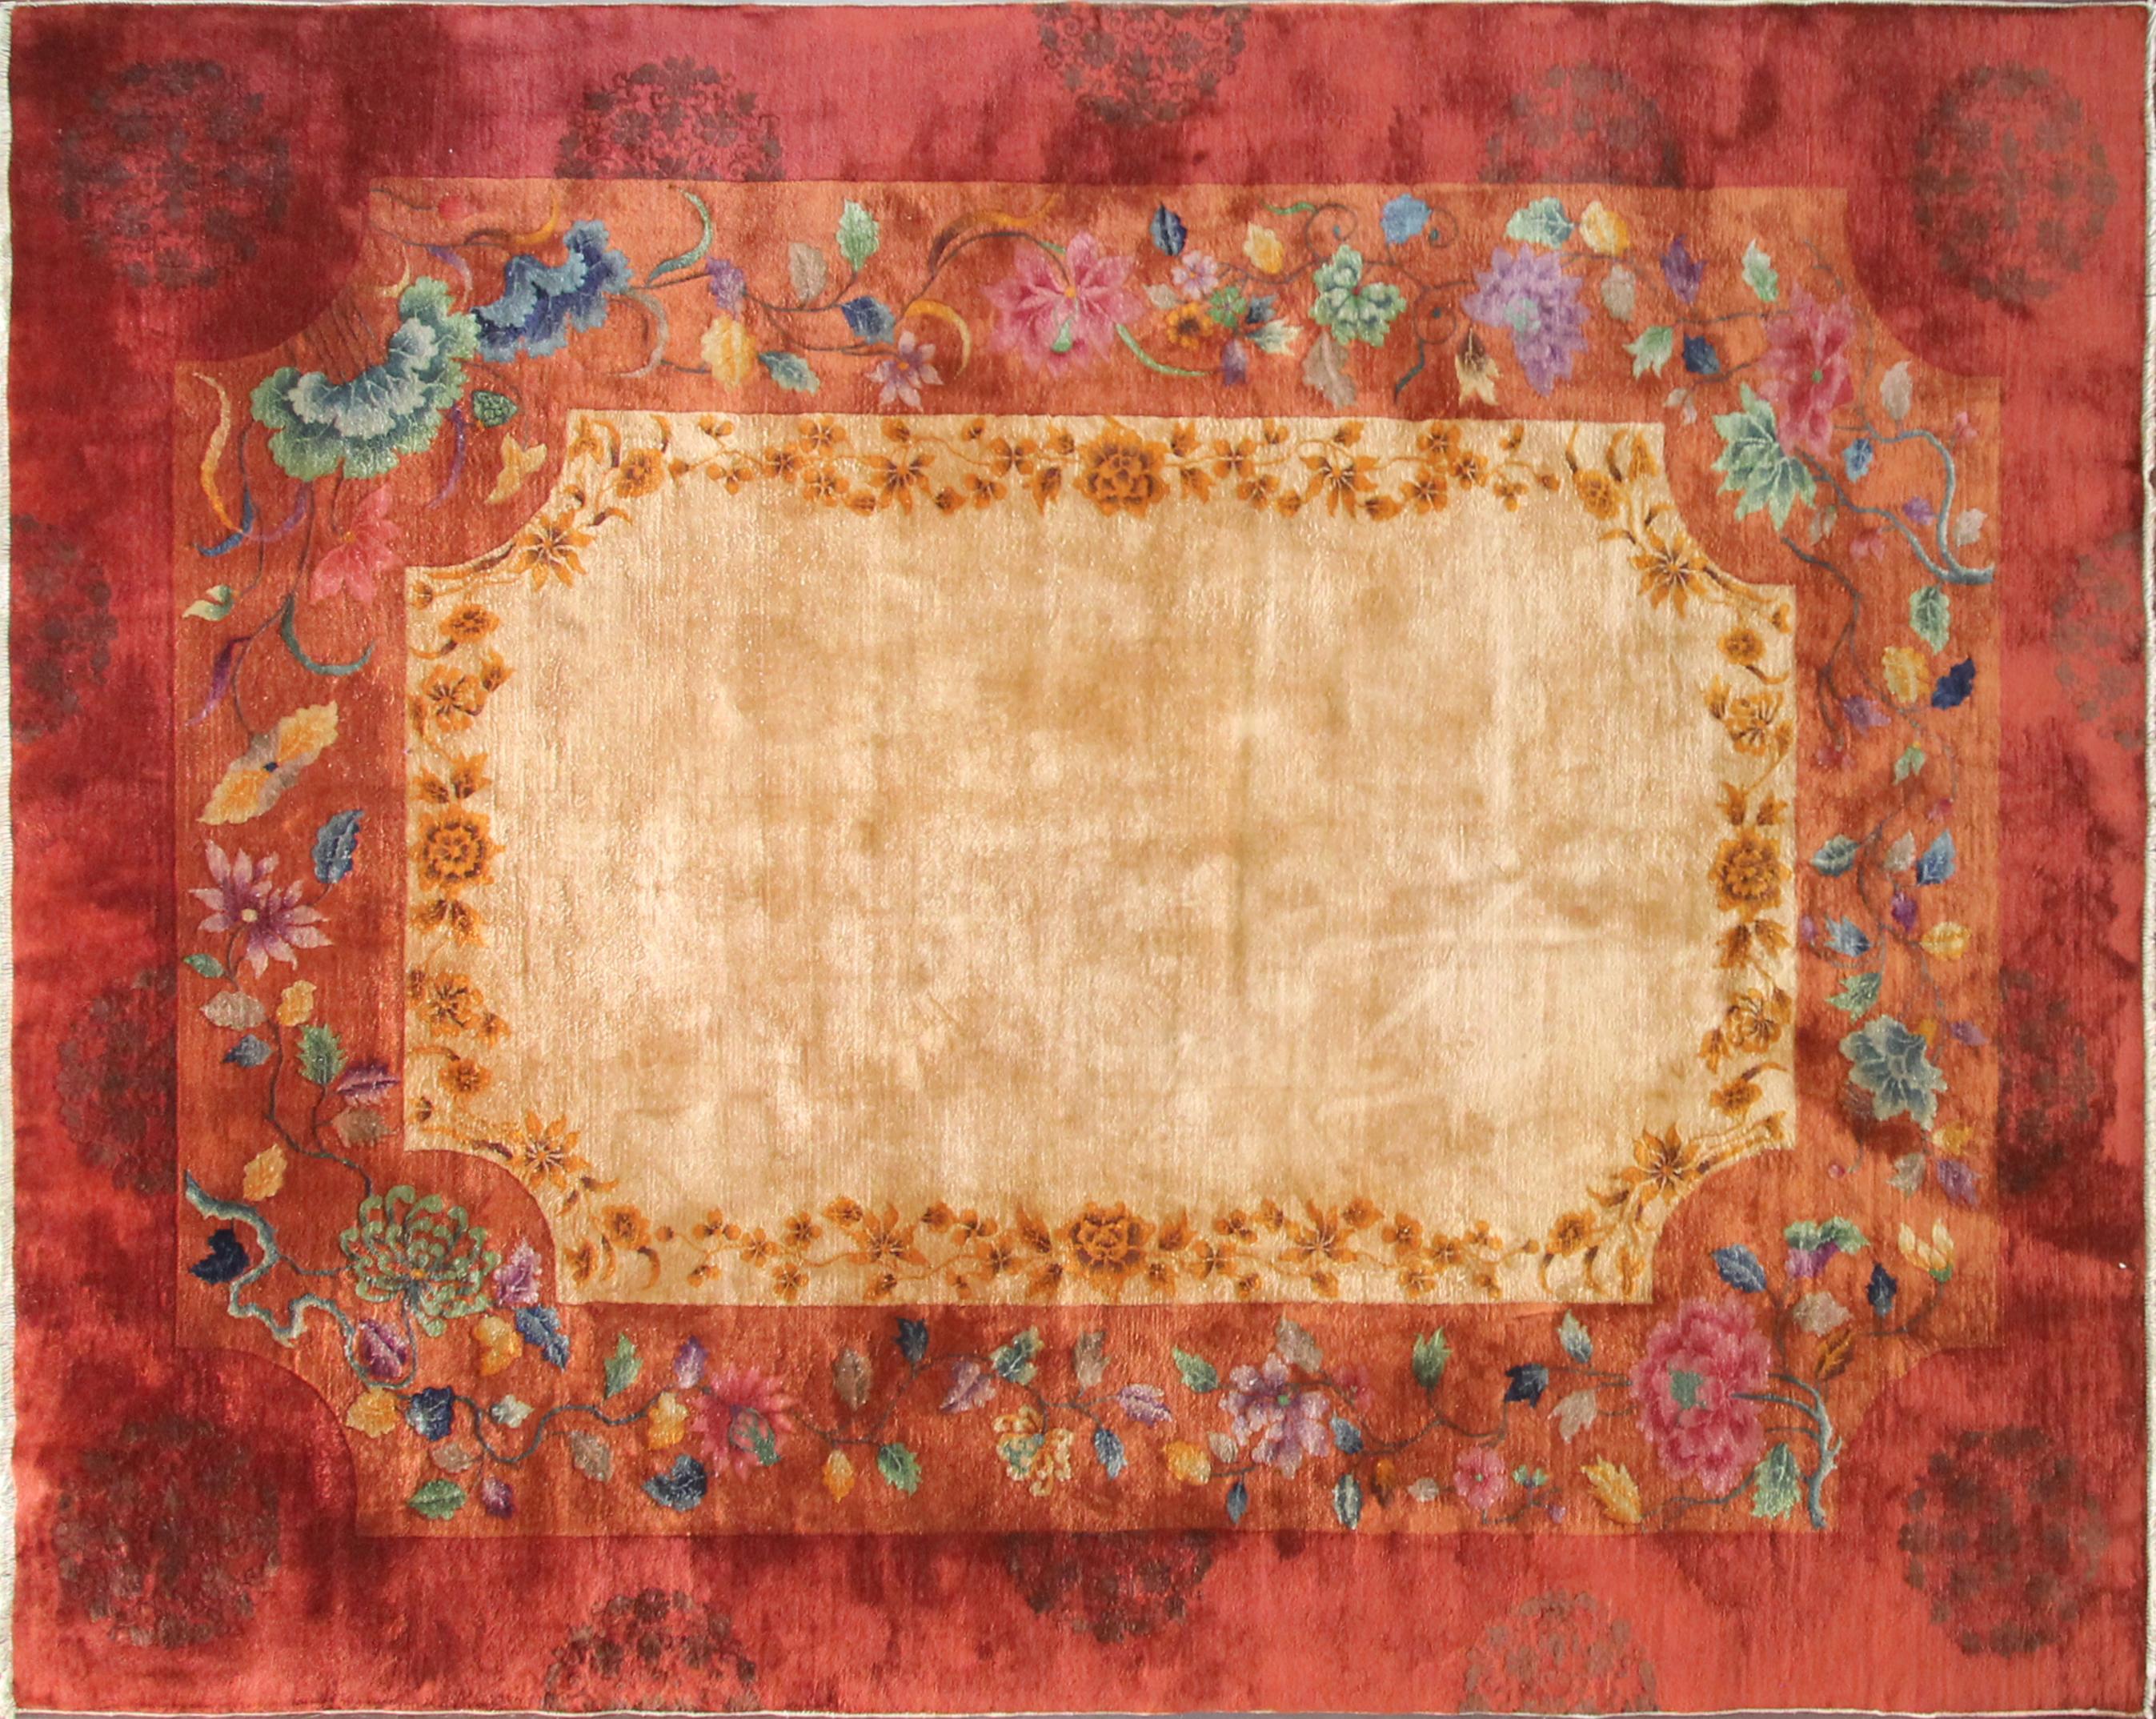 Dieser wunderbare Art-Déco-Teppich wurde in China hergestellt, etwa in den 1910er oder 1920er Jahren. Walter Nichols war ein großer amerikanischer Teppichproduzent (die Art-Déco-Teppiche, die nicht von ihm stammten) in Tientsin. Die Teppiche aus